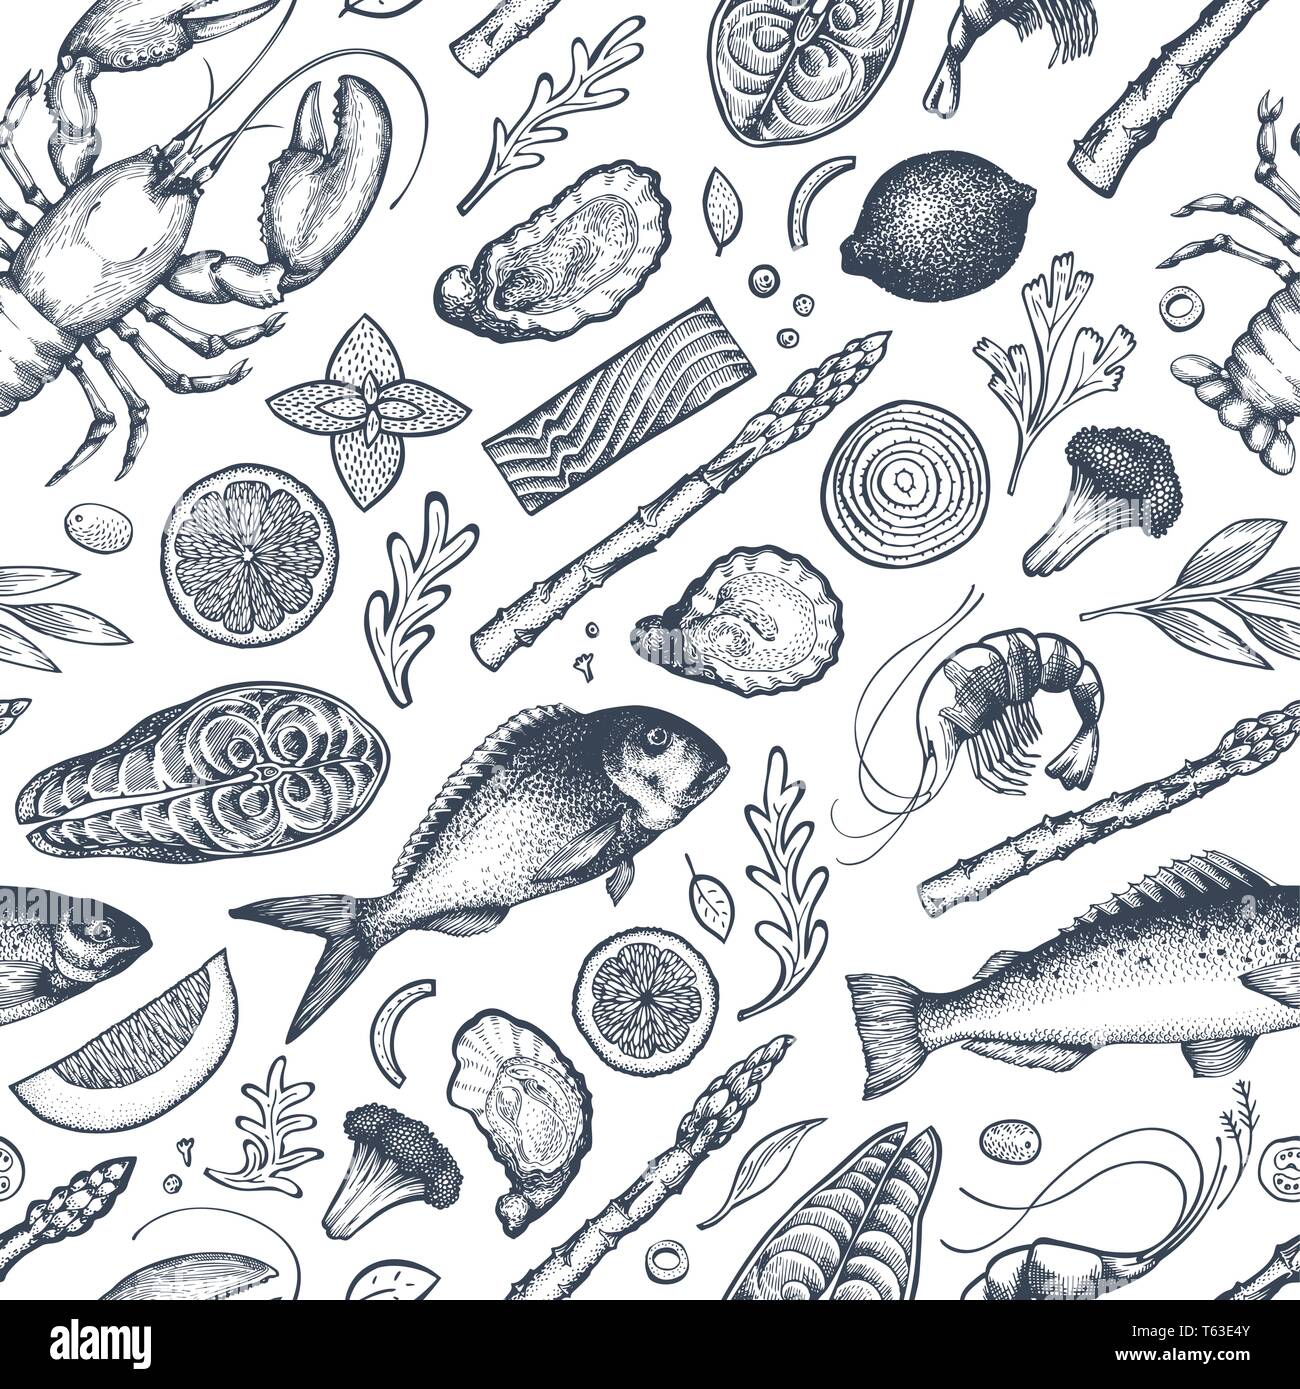 Les fruits de mer et poissons modèle transparente. Hand drawn vector illustration. Peut être utilisé pour la conception, l'emballage, des recettes menu, étiquette, marché aux poissons, fruits de mer de la production Illustration de Vecteur